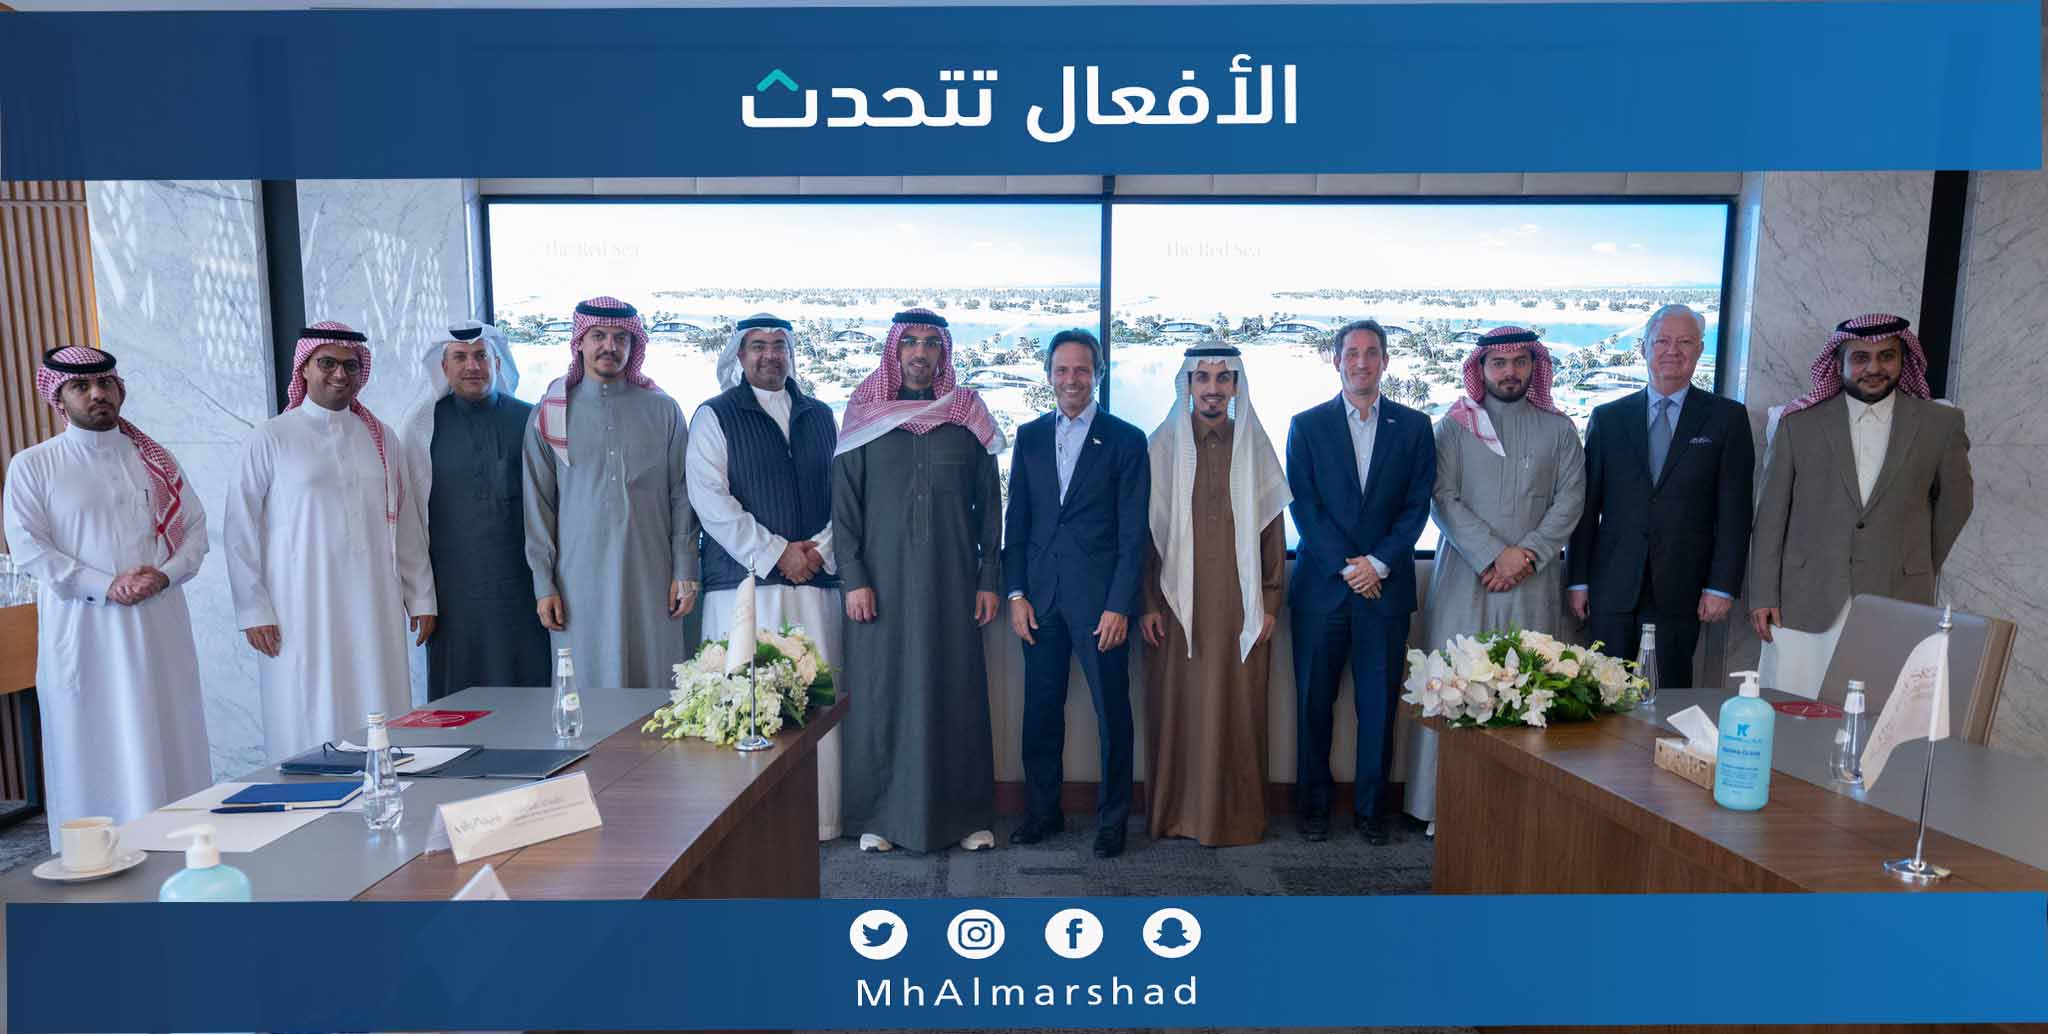 وفد اللجنة العقارية بـغرفة_الرياض يزور شركة البحر الأحمر للتطوير ويلتقي الرئيس التنفيذي السيد.جون باغانوب